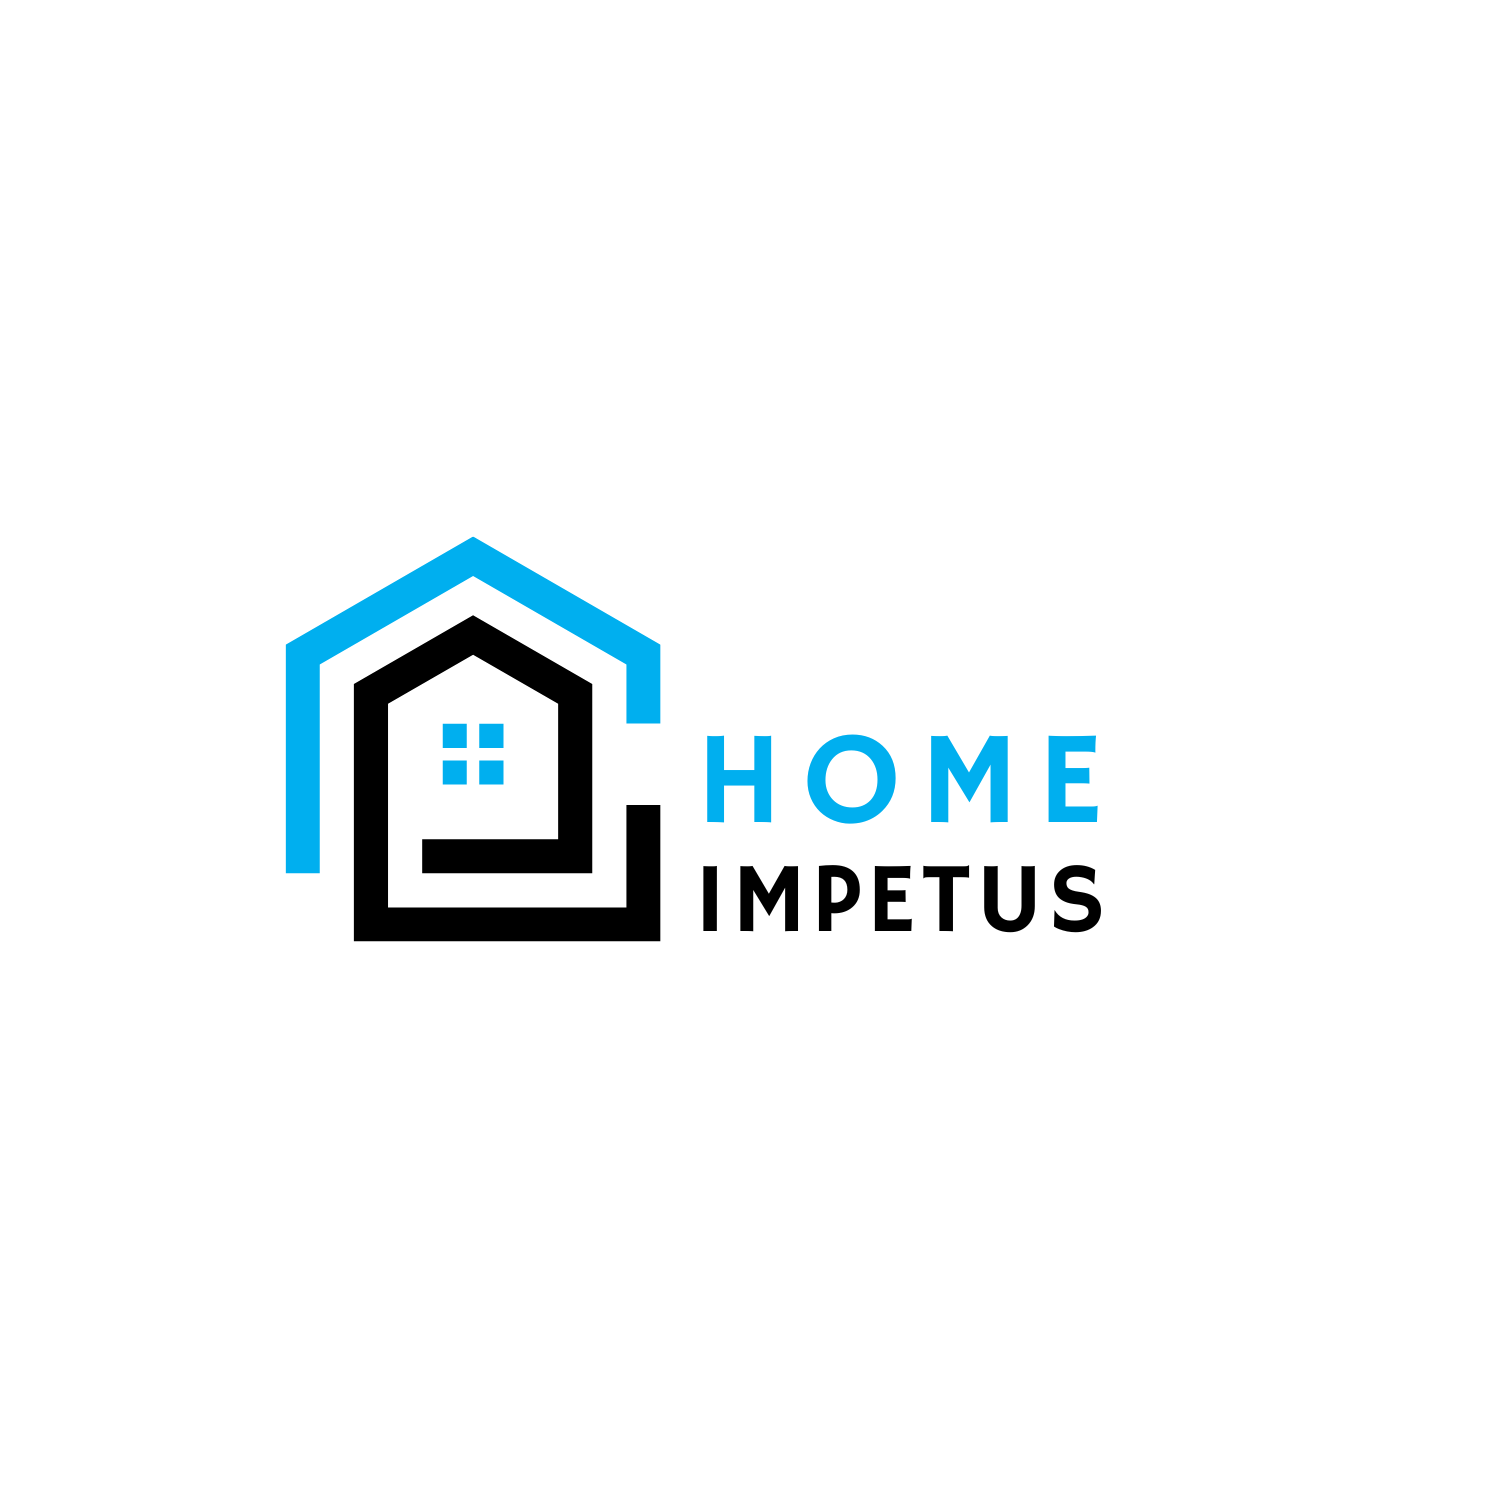 (c) Homeimpetus.com